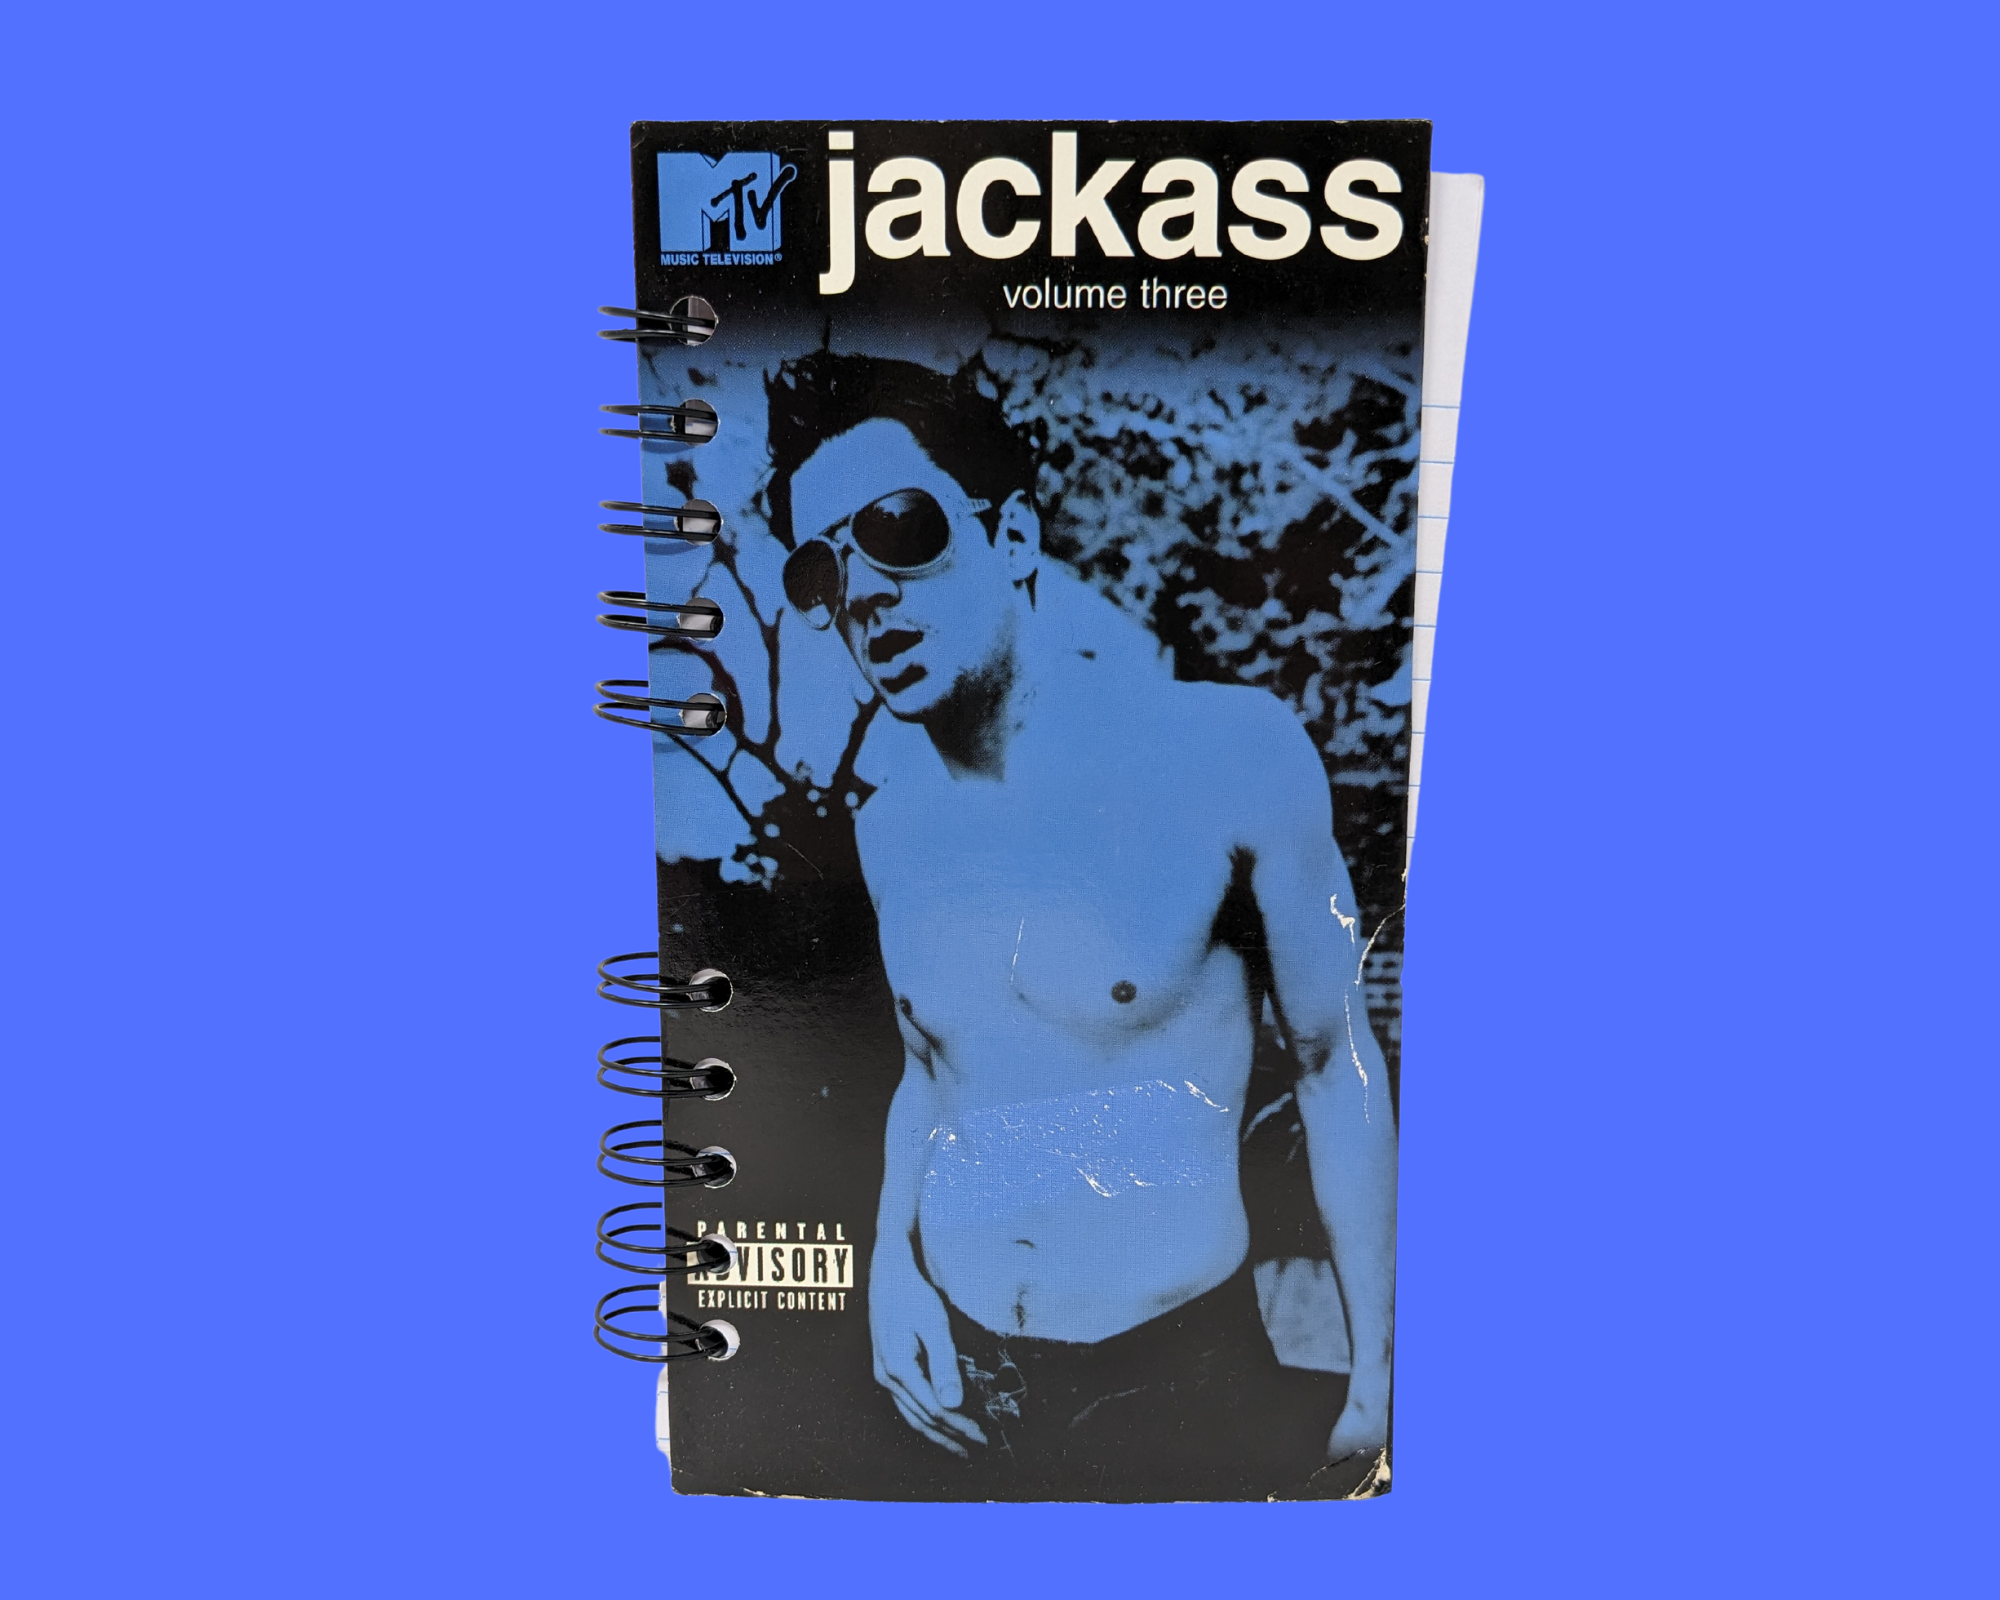 Mtv Jackass 3 VHS